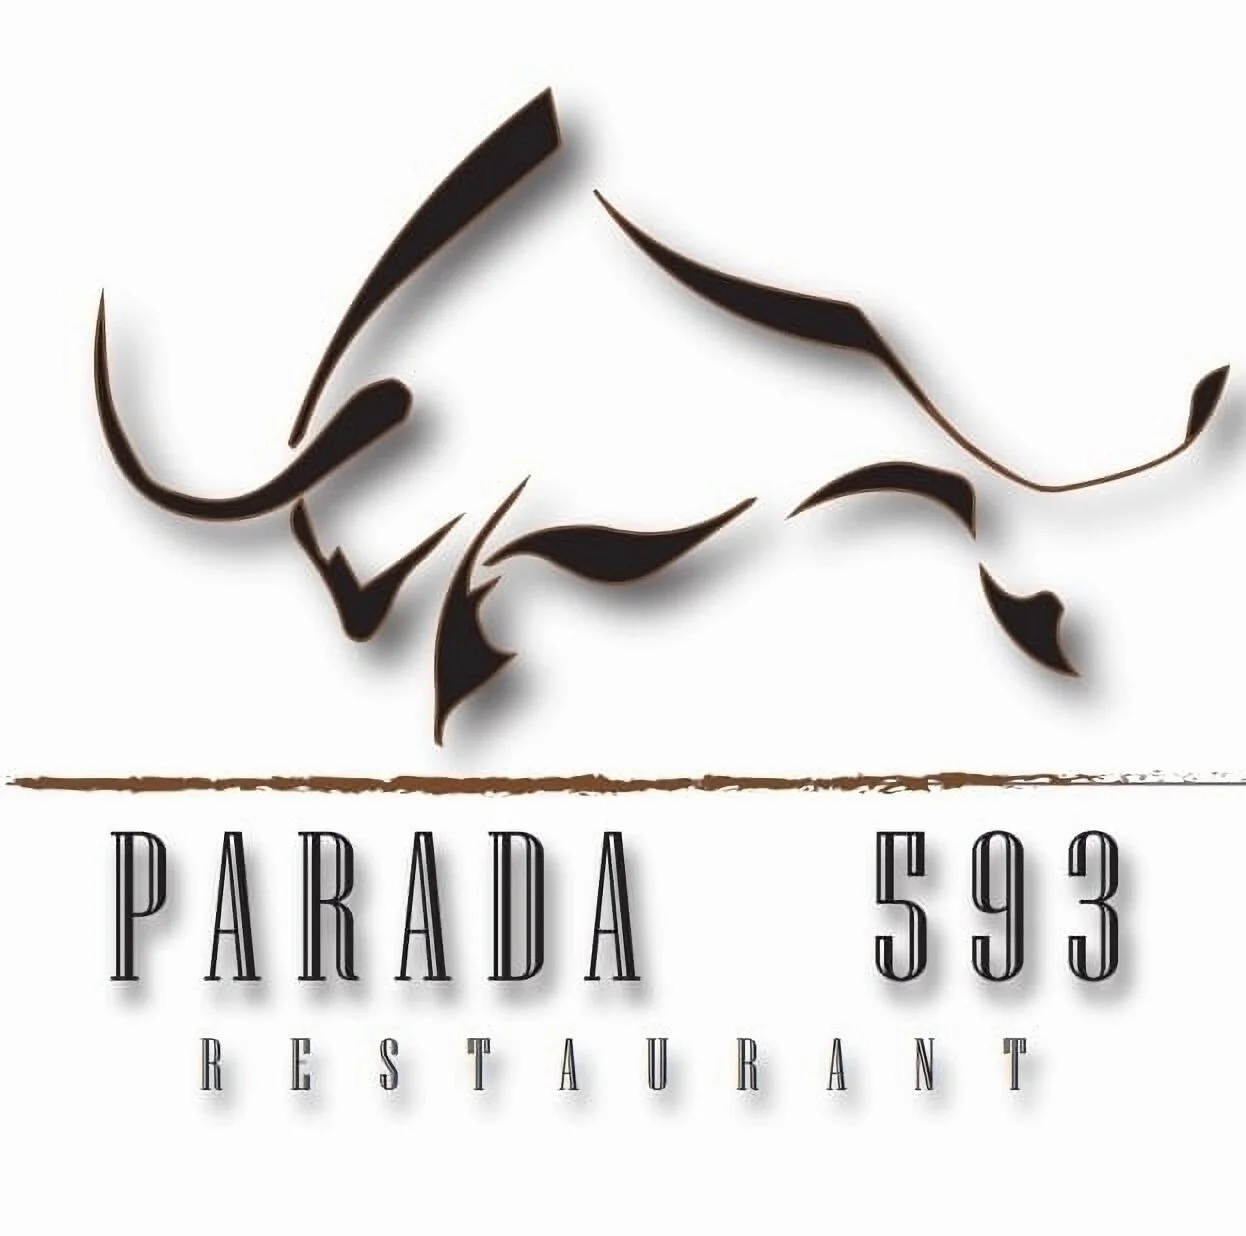 Parada593-4954